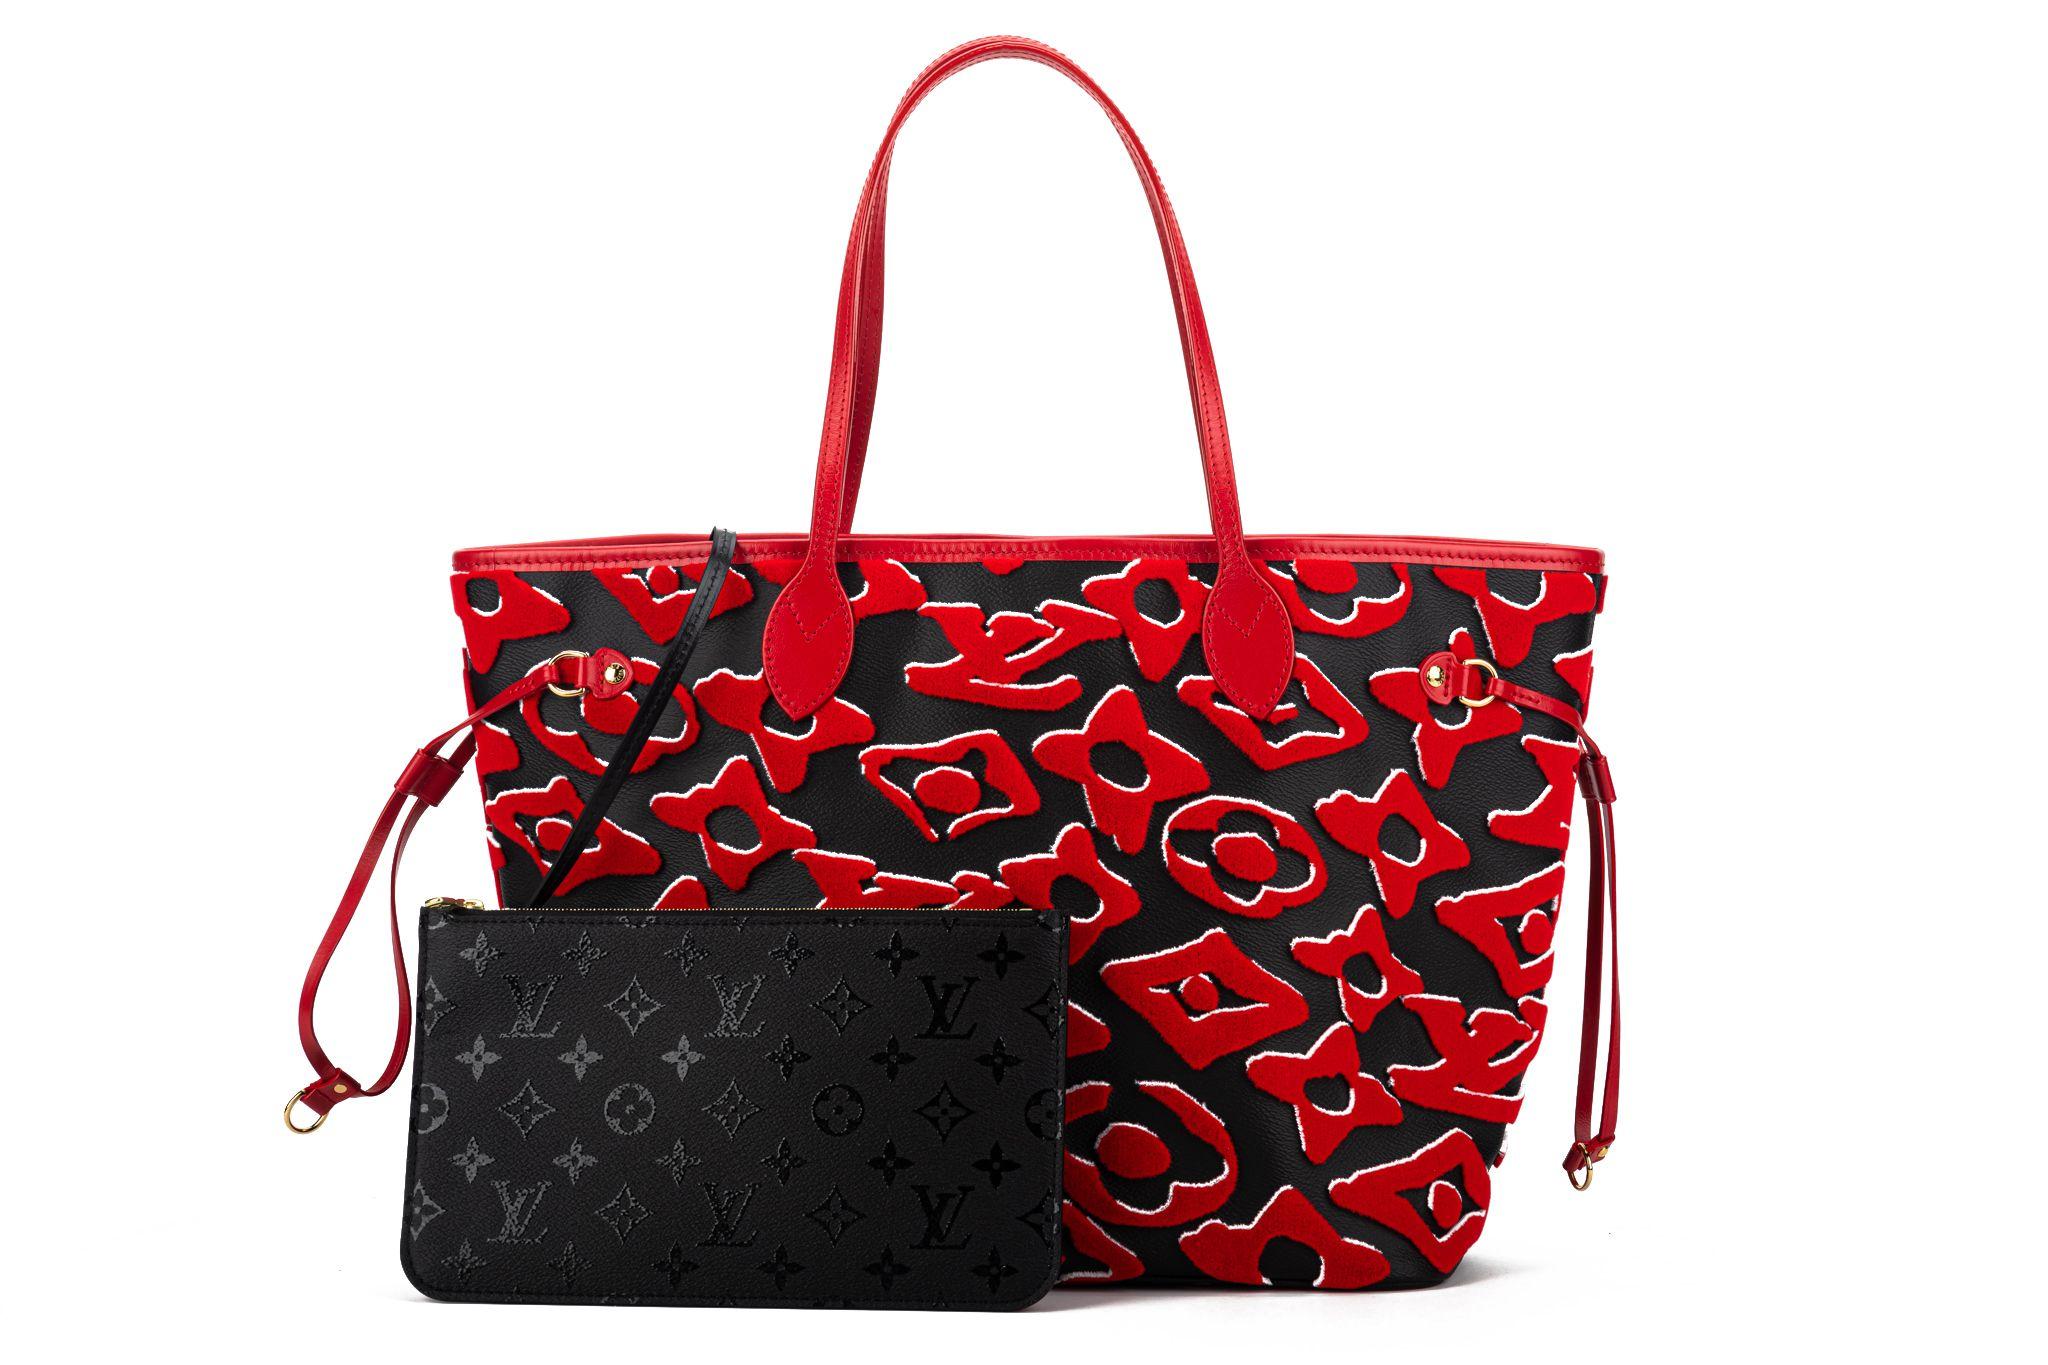 Louis Vuitton x Urs Fischer Bag New  2